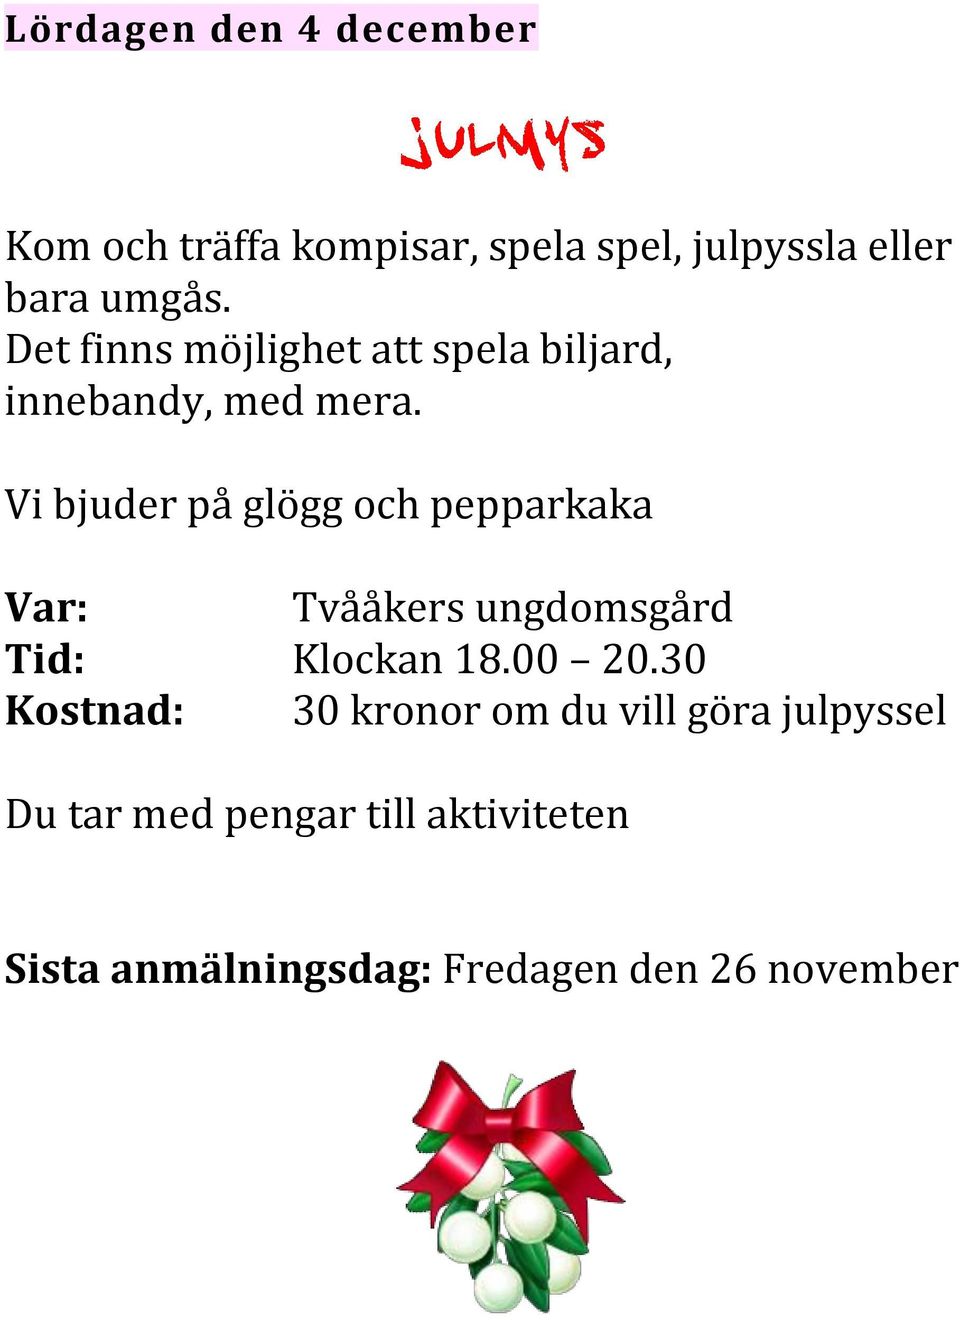 Vi bjuder på glögg och pepparkaka Var: Tvååkers ungdomsgård Tid: Klockan 18.00 20.